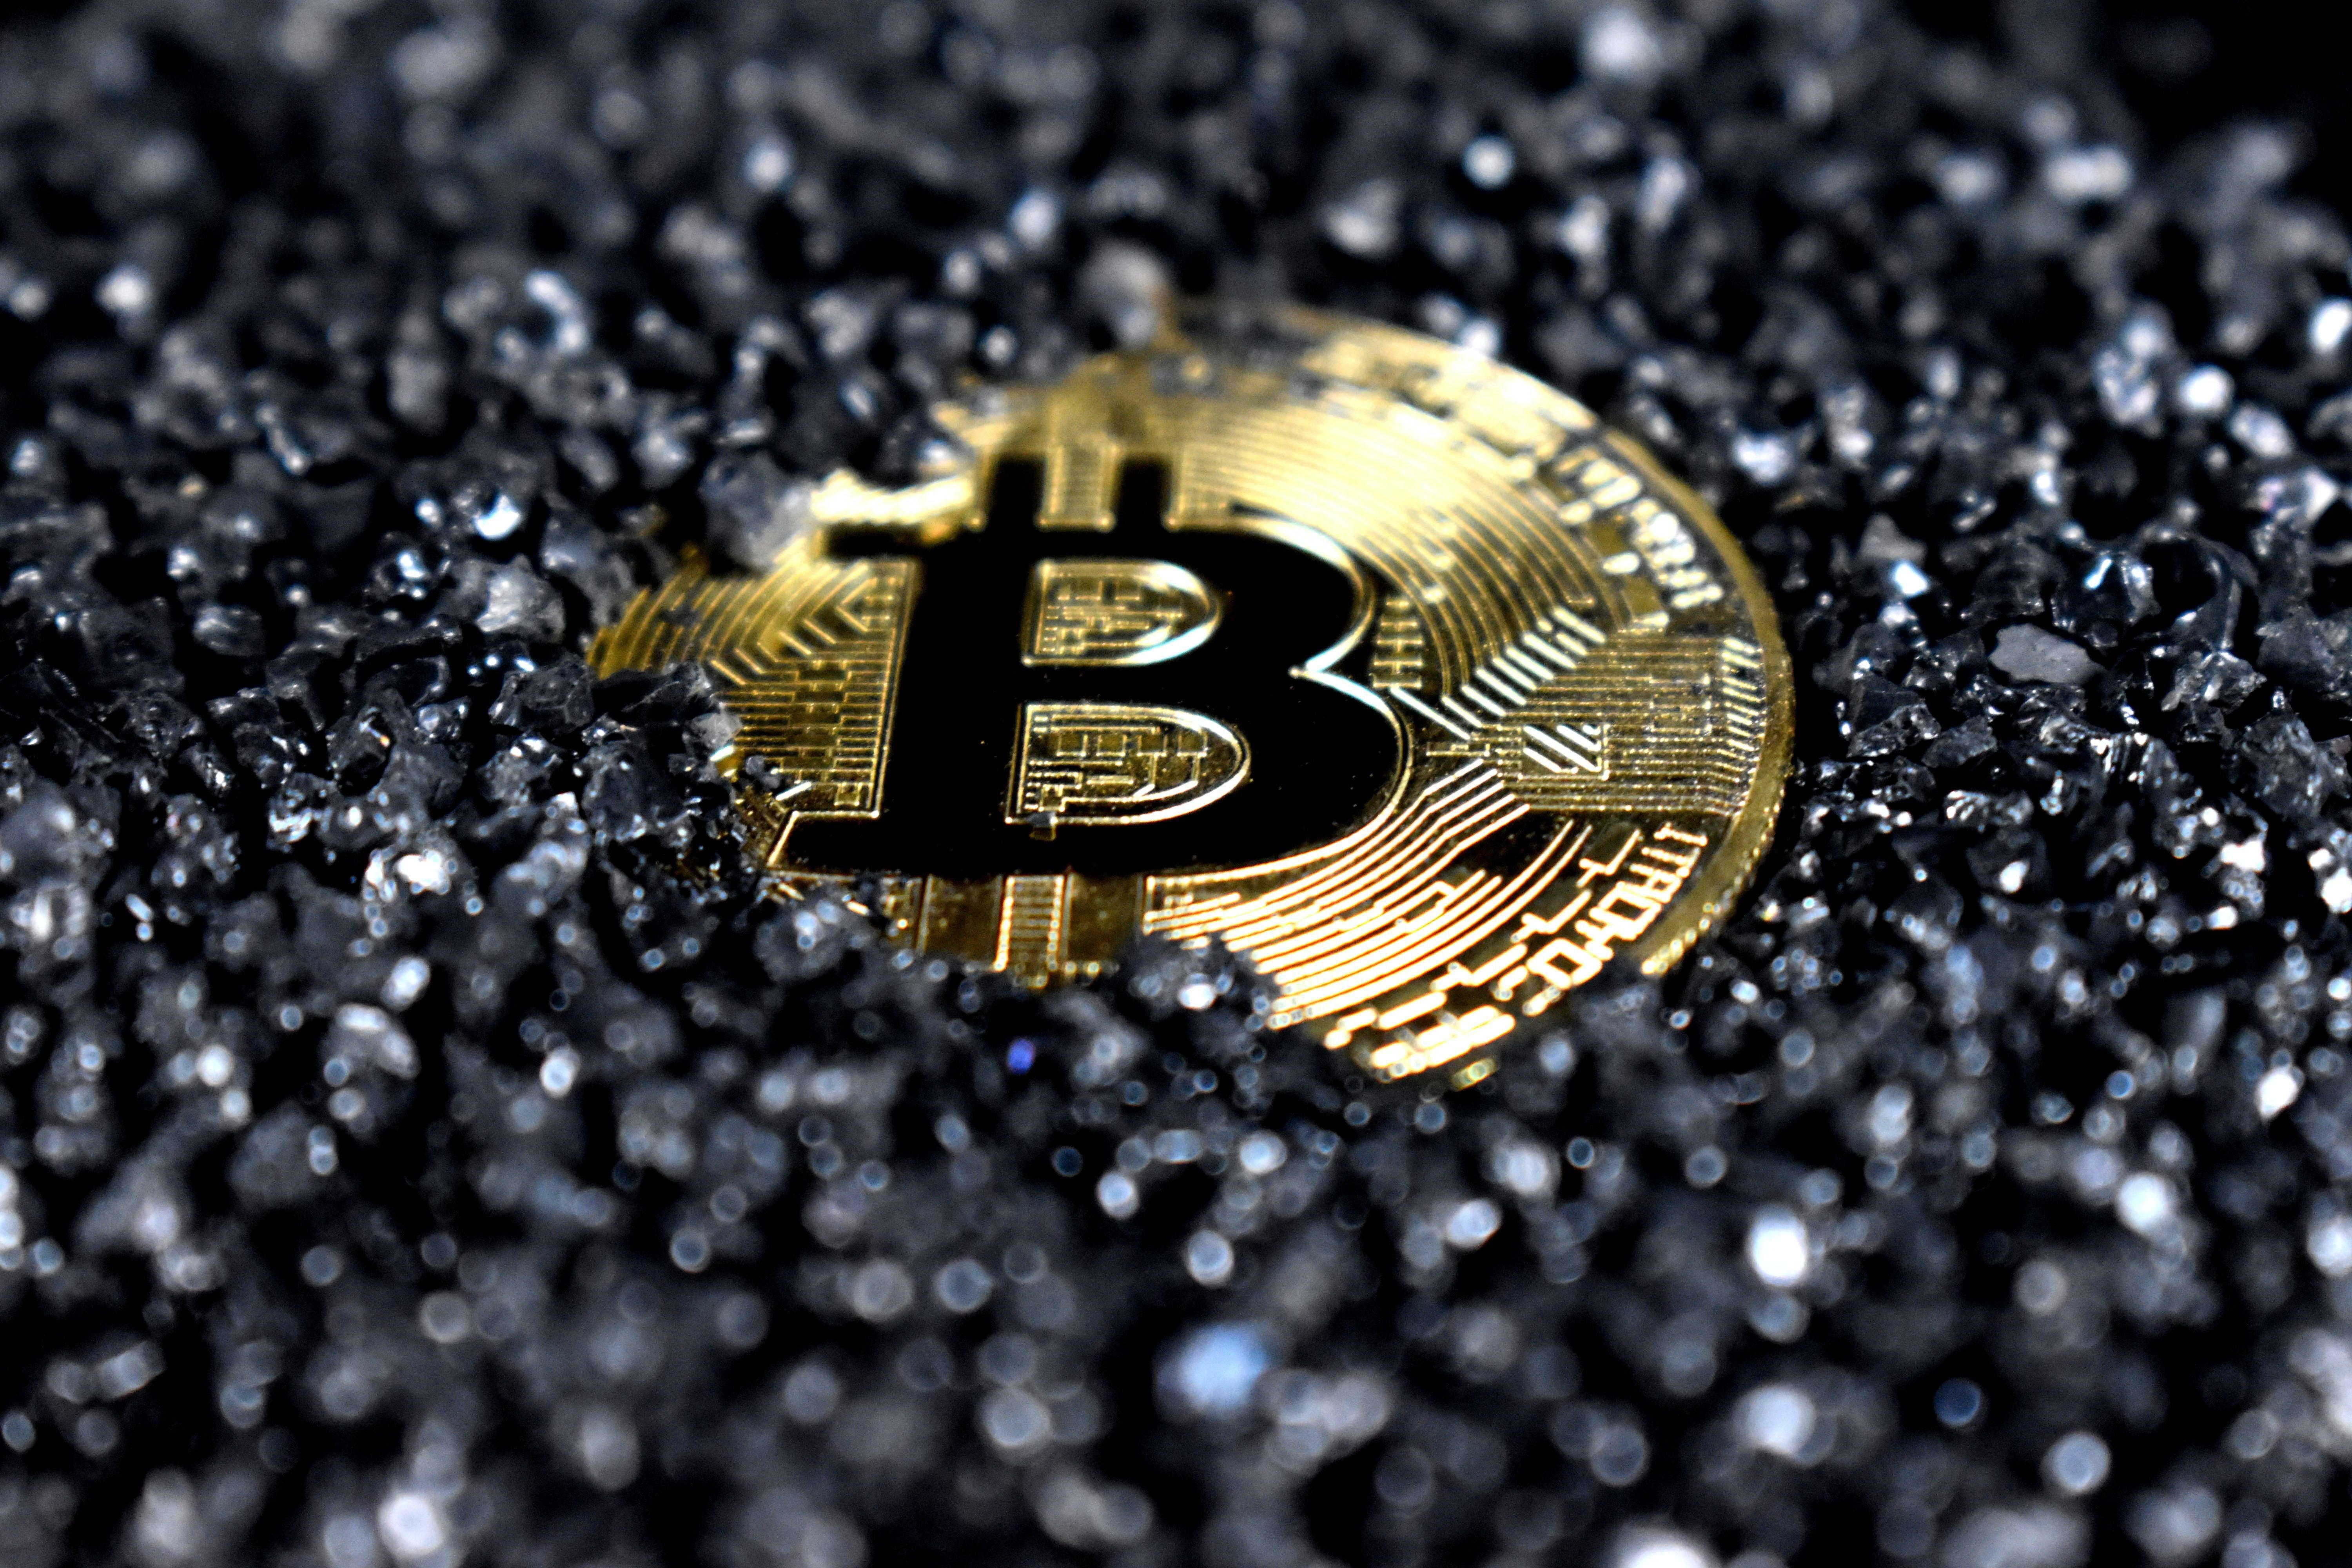 Bitcoin érme fekete kristályokkal félig betemetve